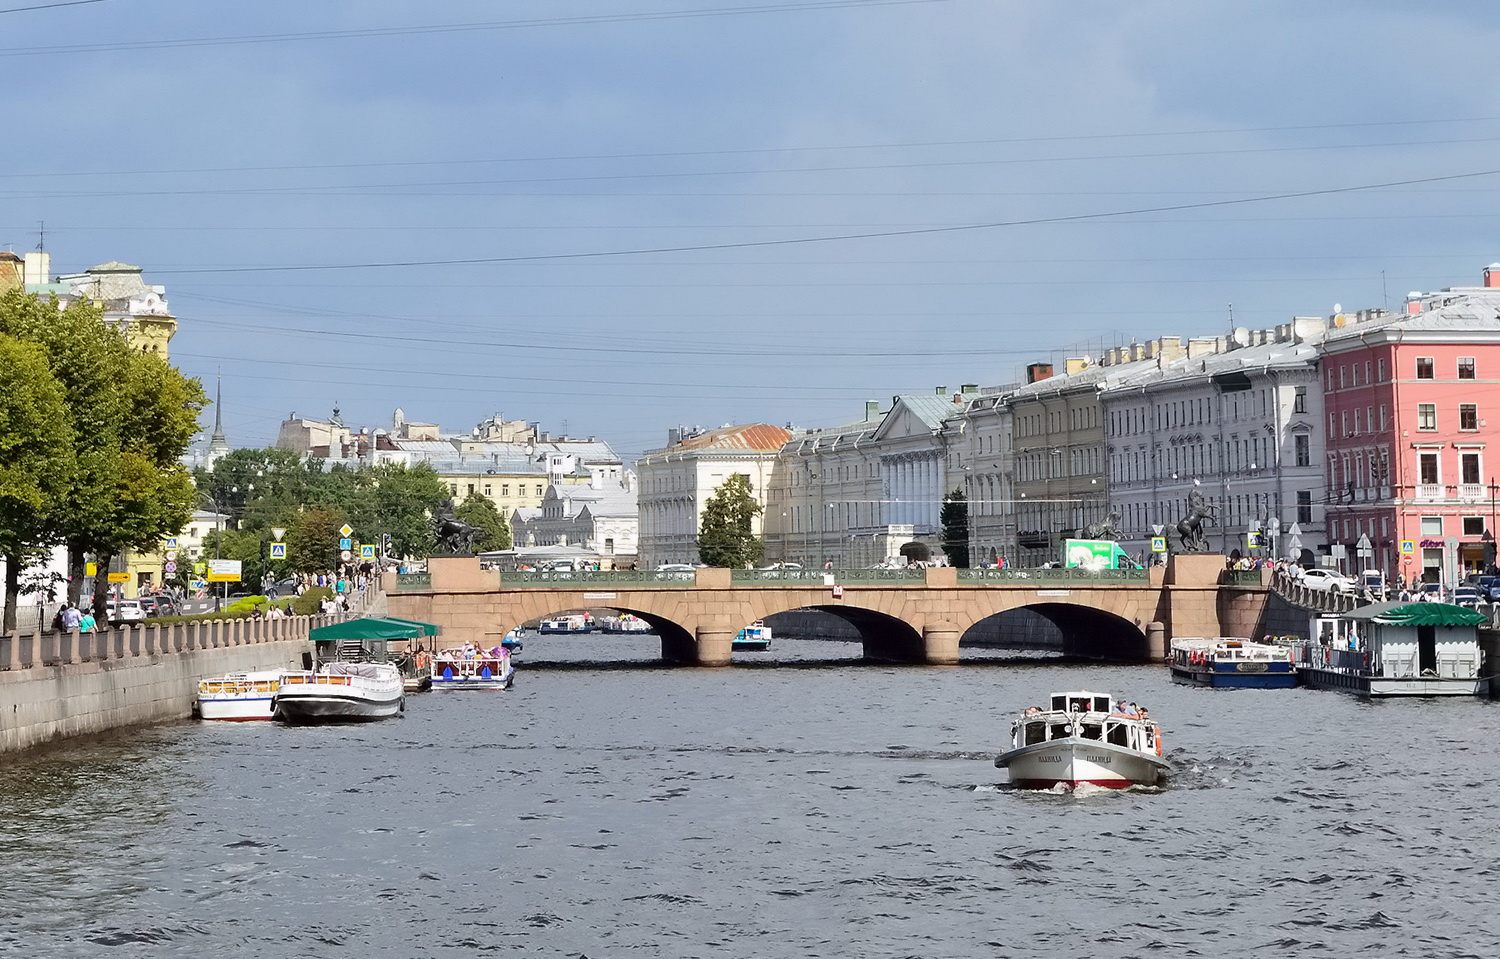 Peterburi, Невский проспект, Аничков мост